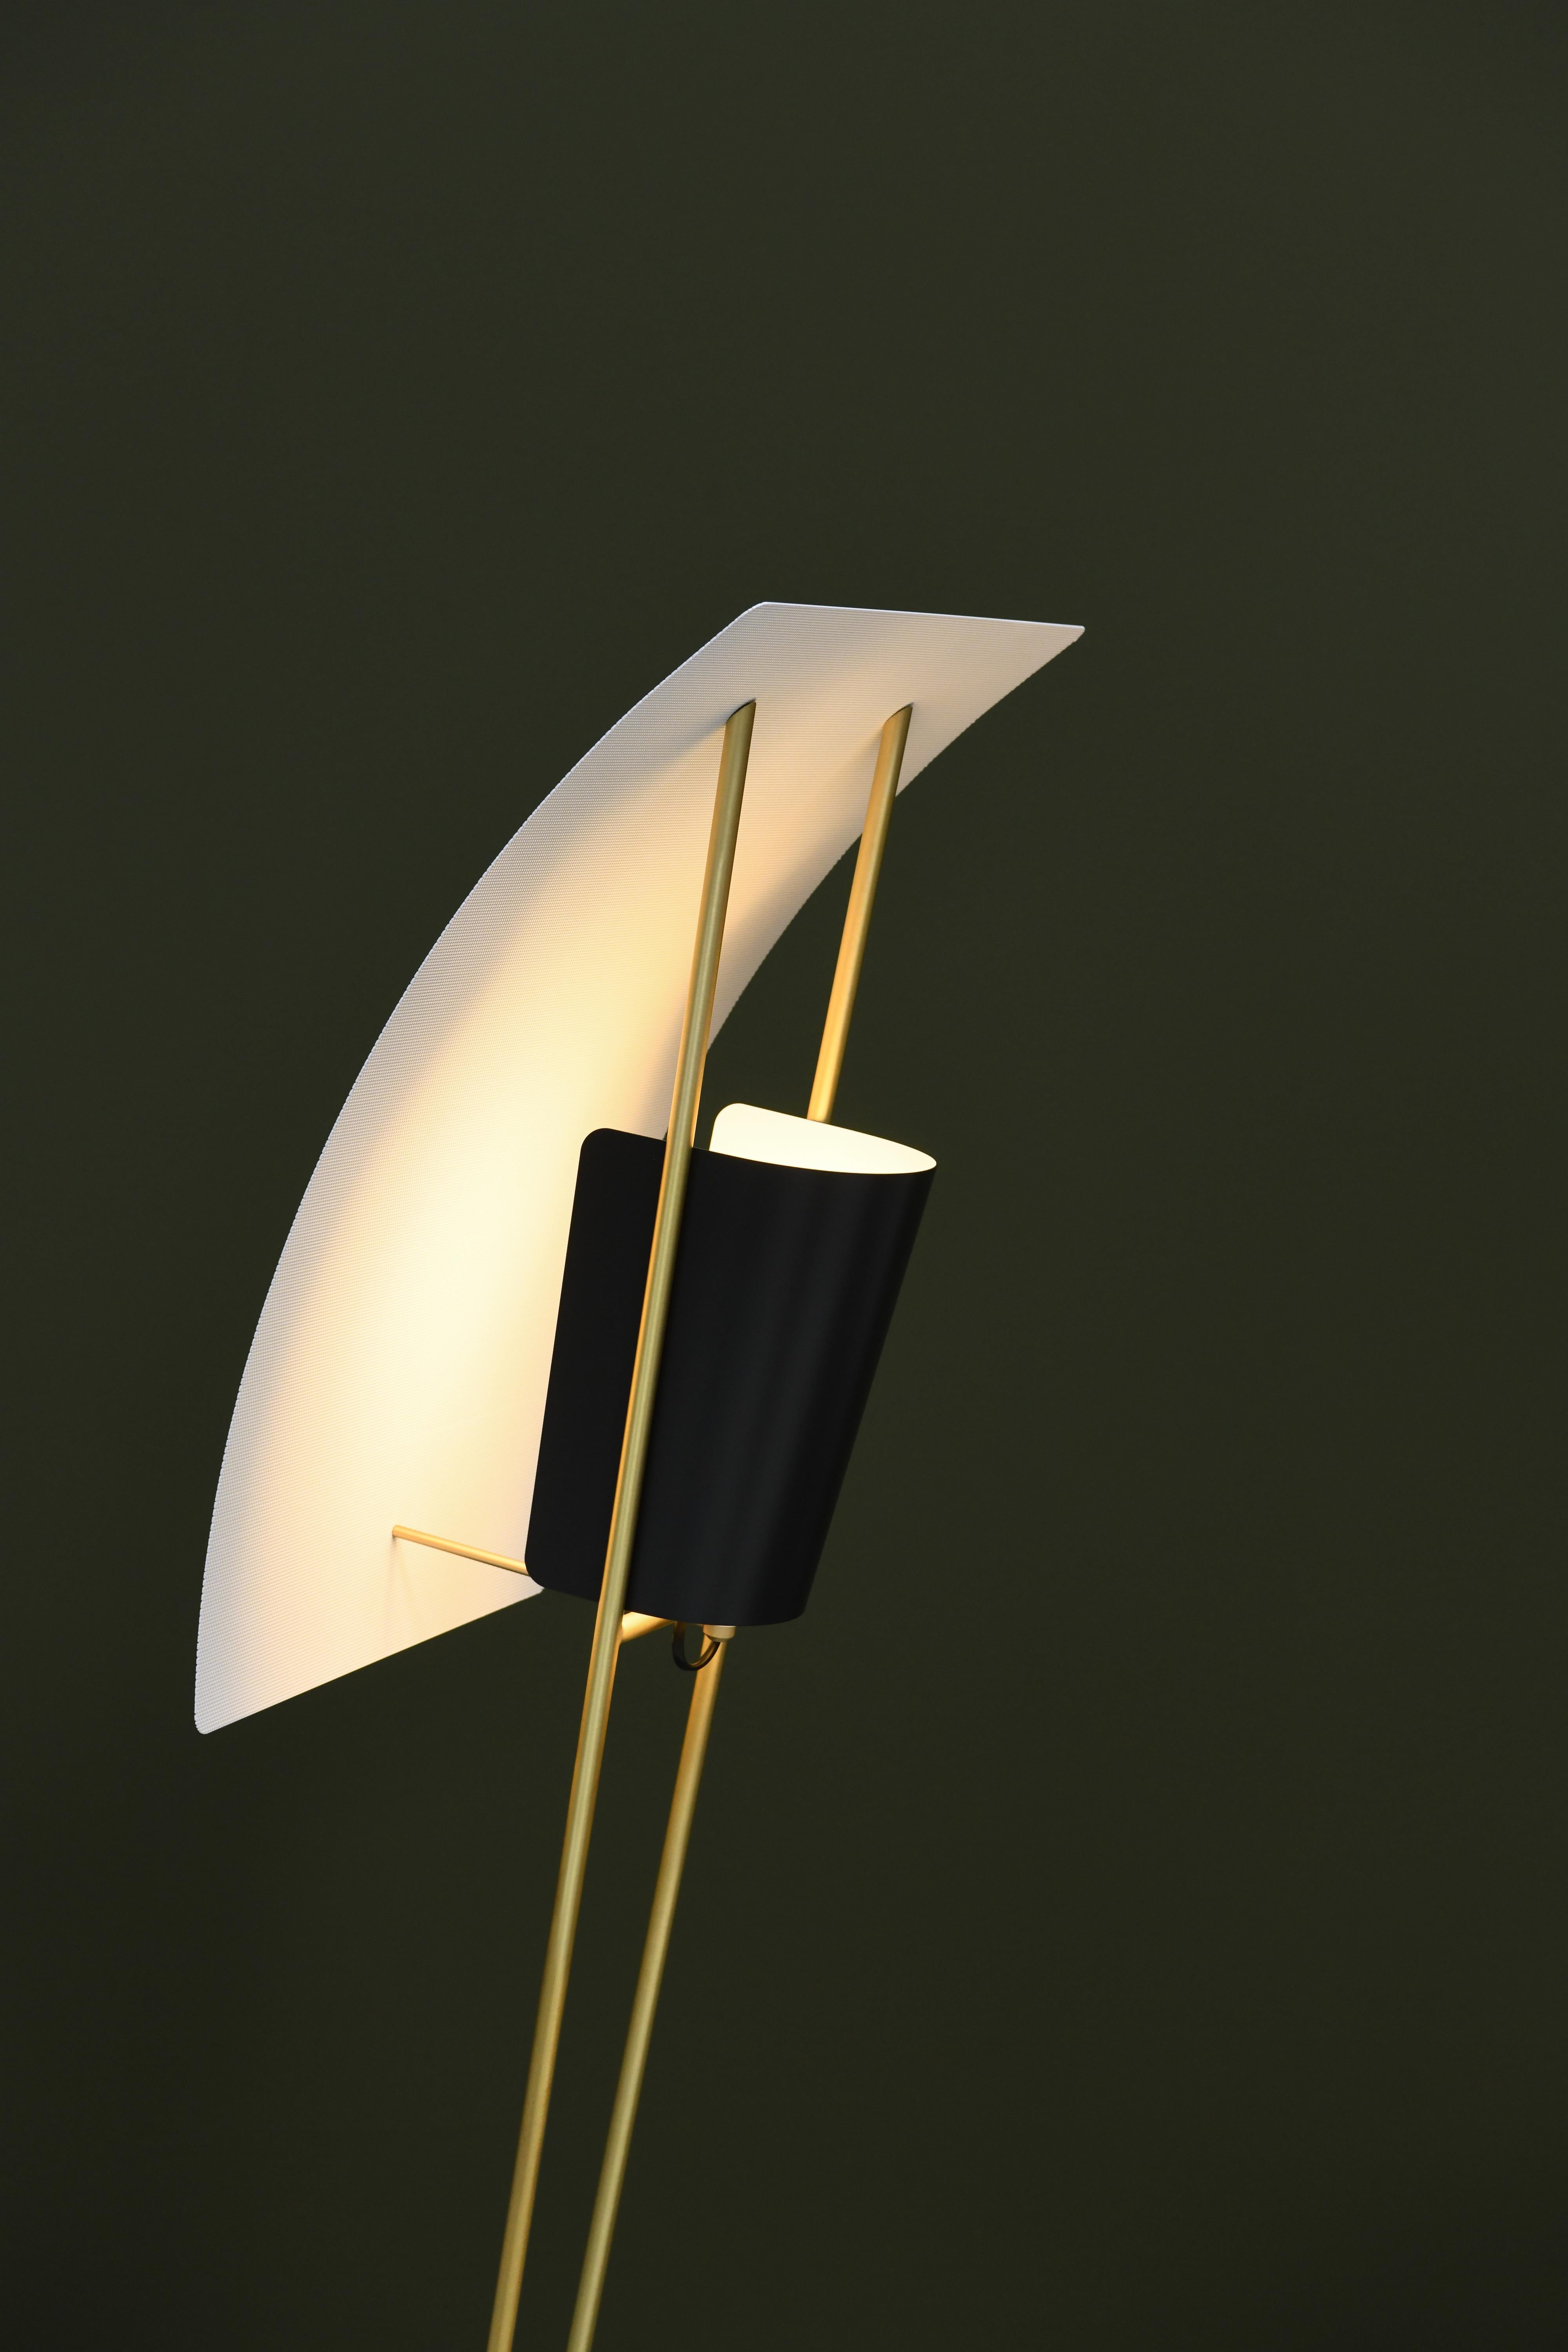 Pierre Guariche Kite Stehleuchte in Schwarz und Weiß für Sammode Studio. 

Diese 1958 von Pierre Guariche entworfene Stehleuchte wird in einer autorisierten Neuauflage von Sammode Studio in Frankreich hergestellt. Dabei werden viele der